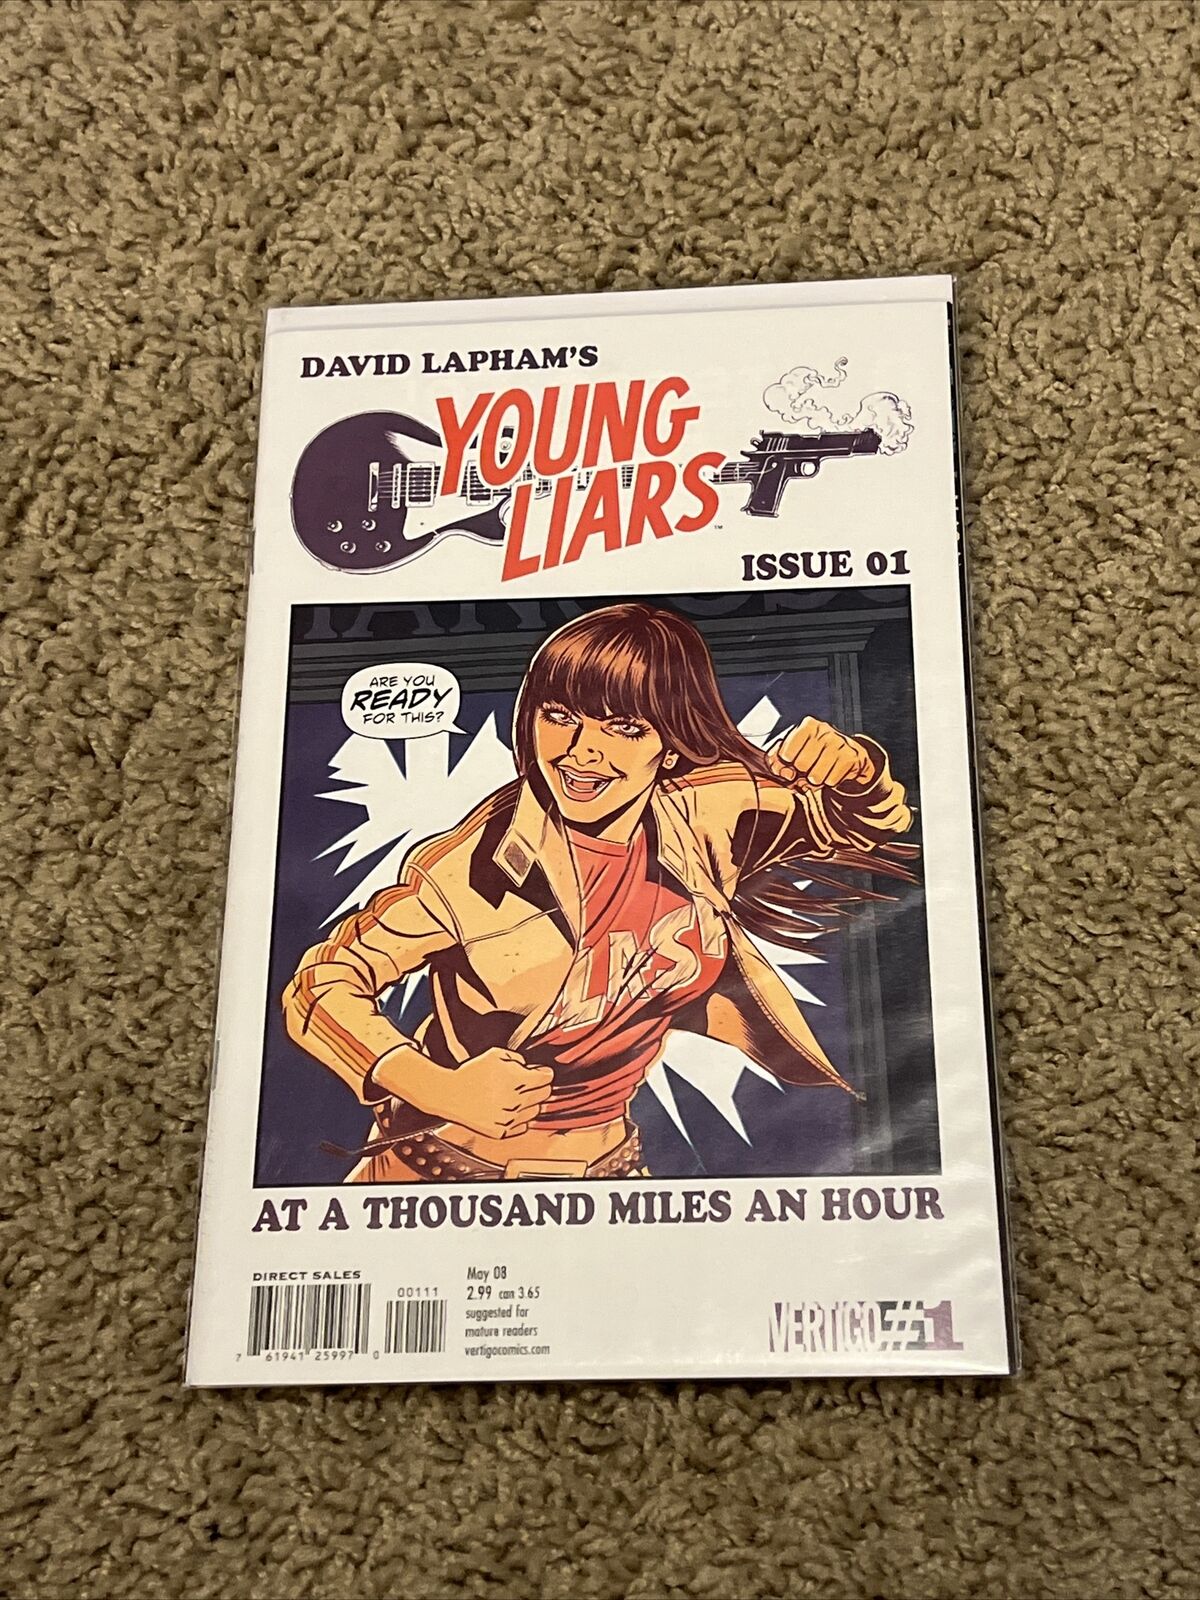 Young Liars #1 by David Lapham Vertigo Comics. NM